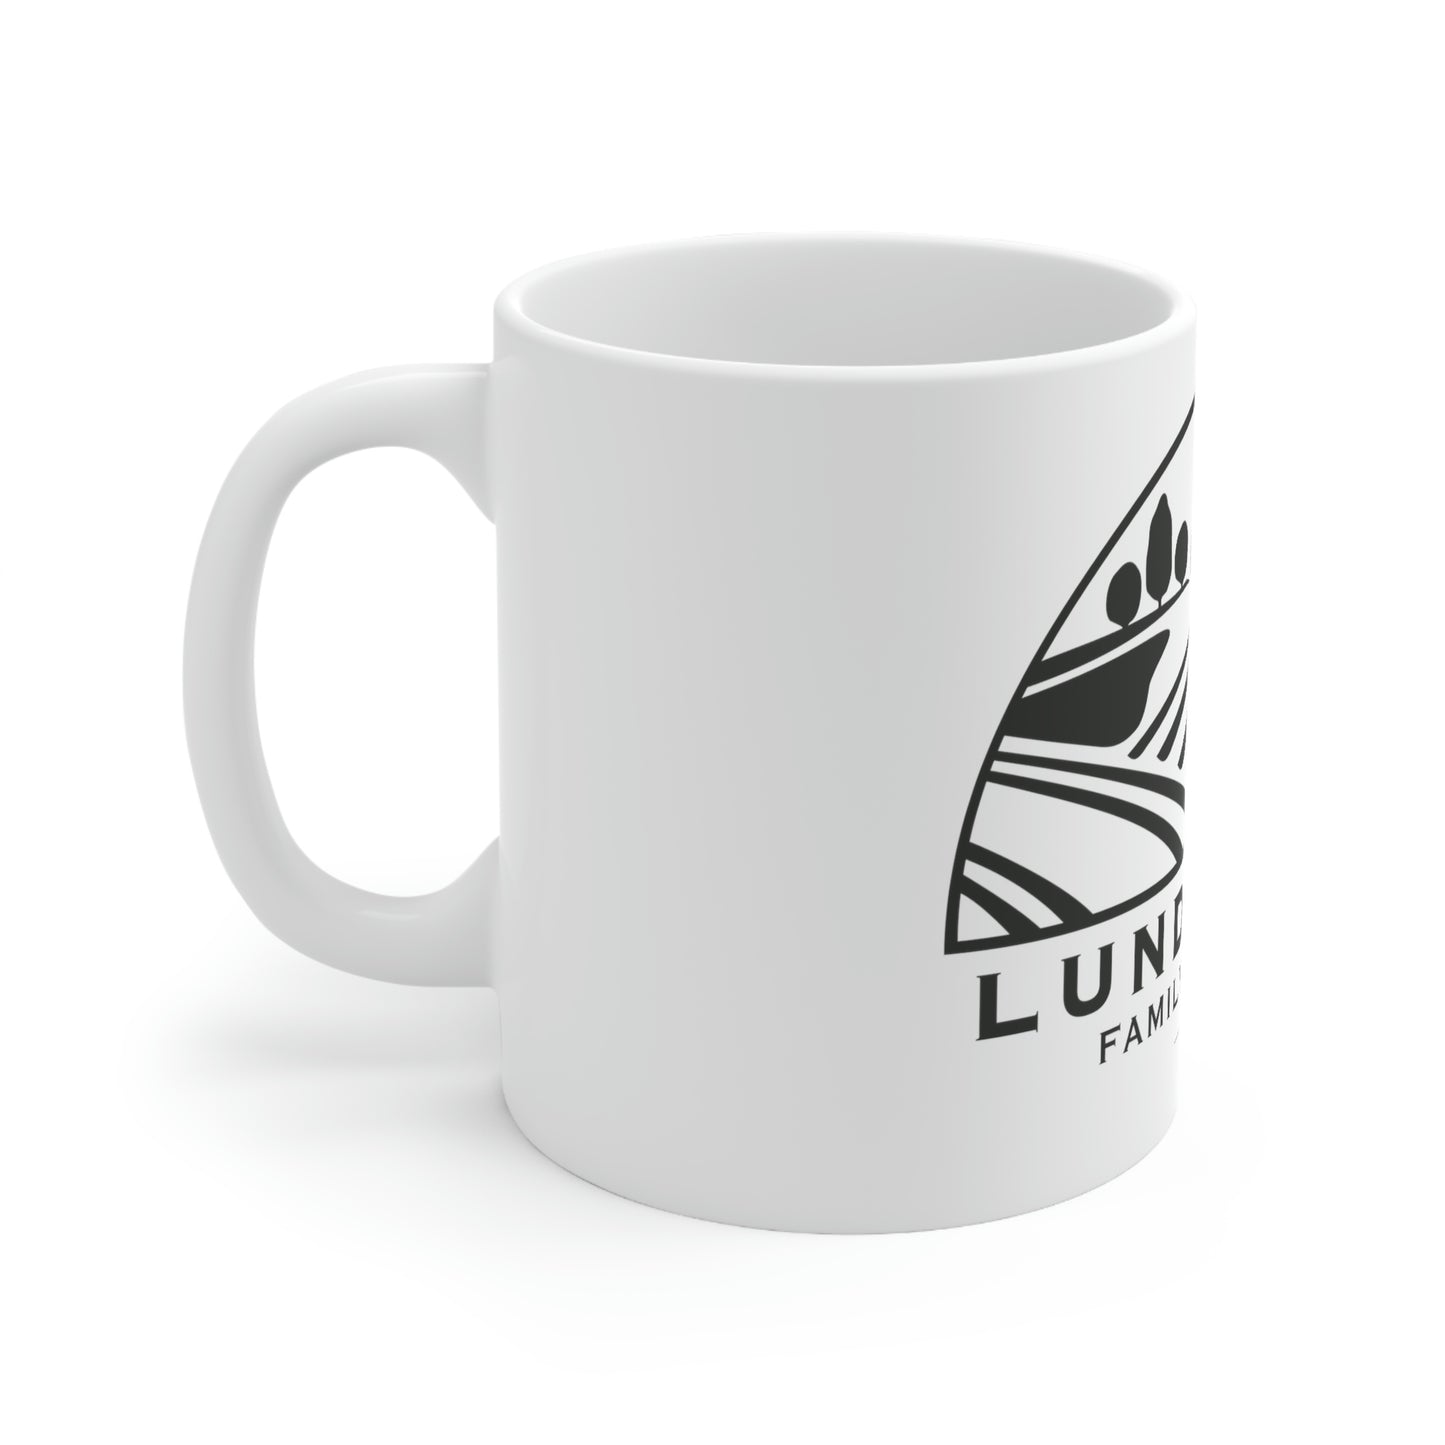 LFAD Ceramic Mug 11oz